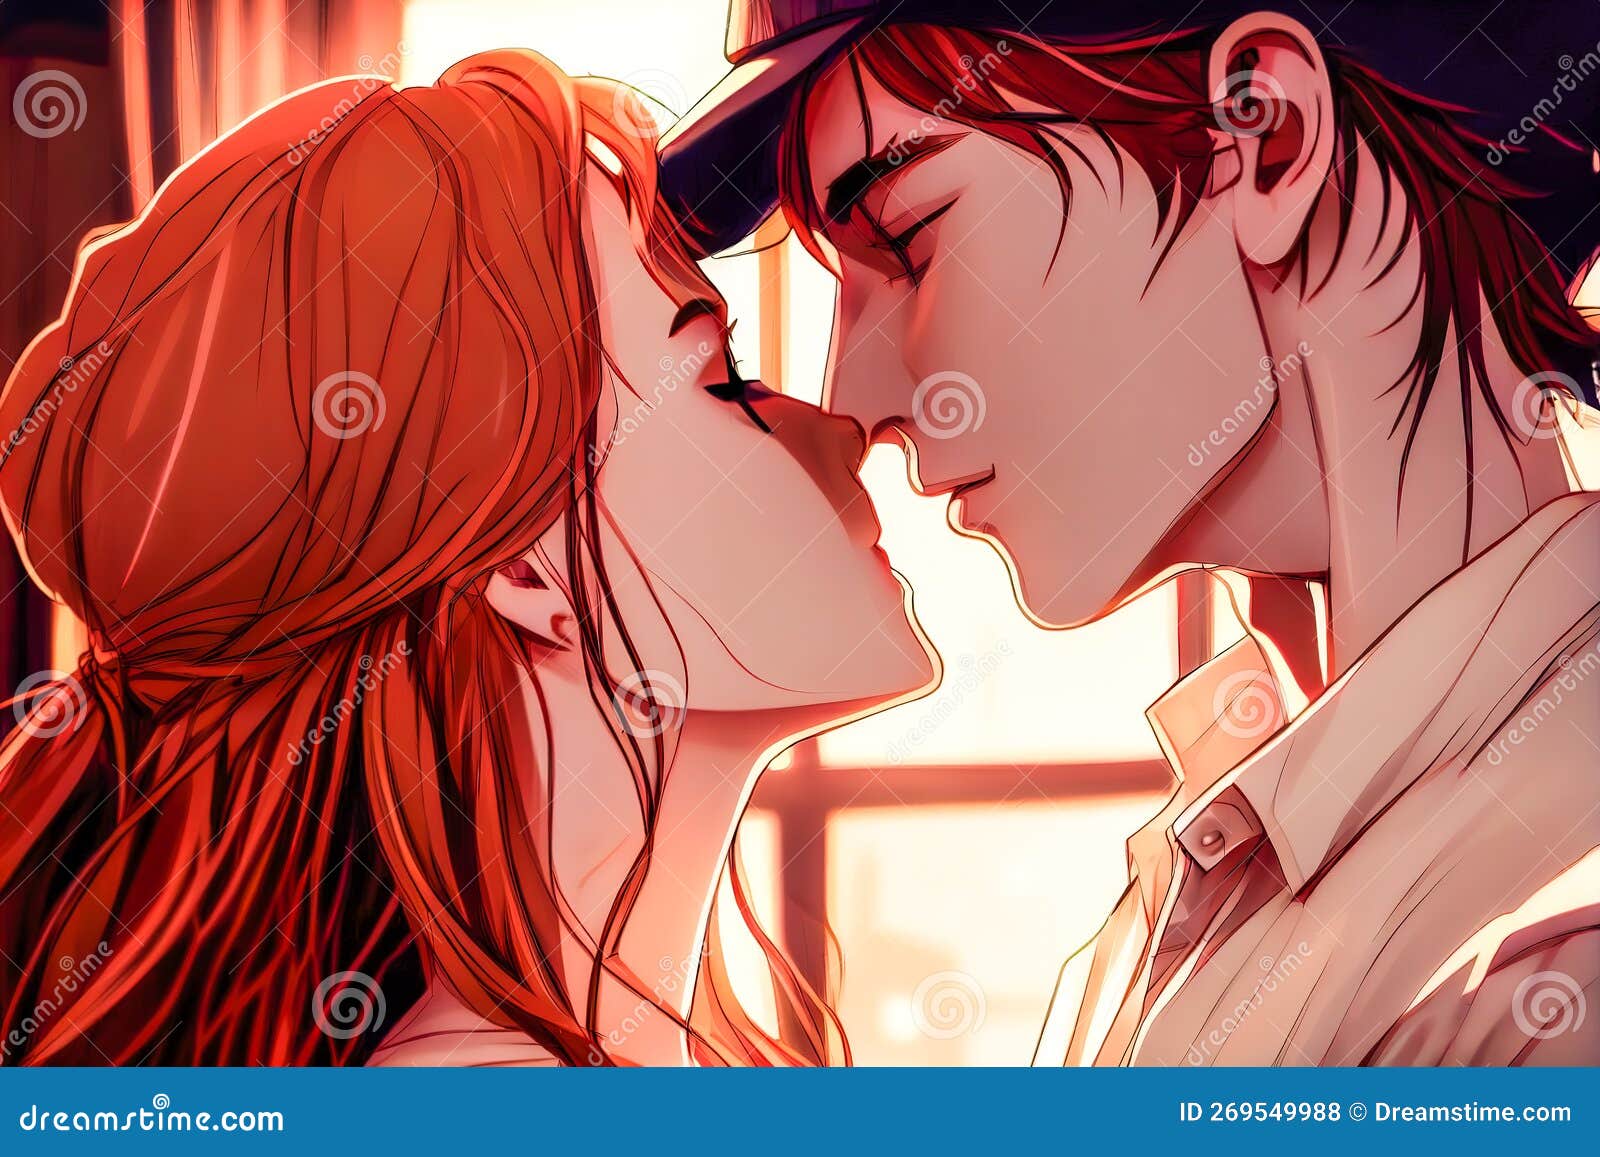 animes de romance com beijos